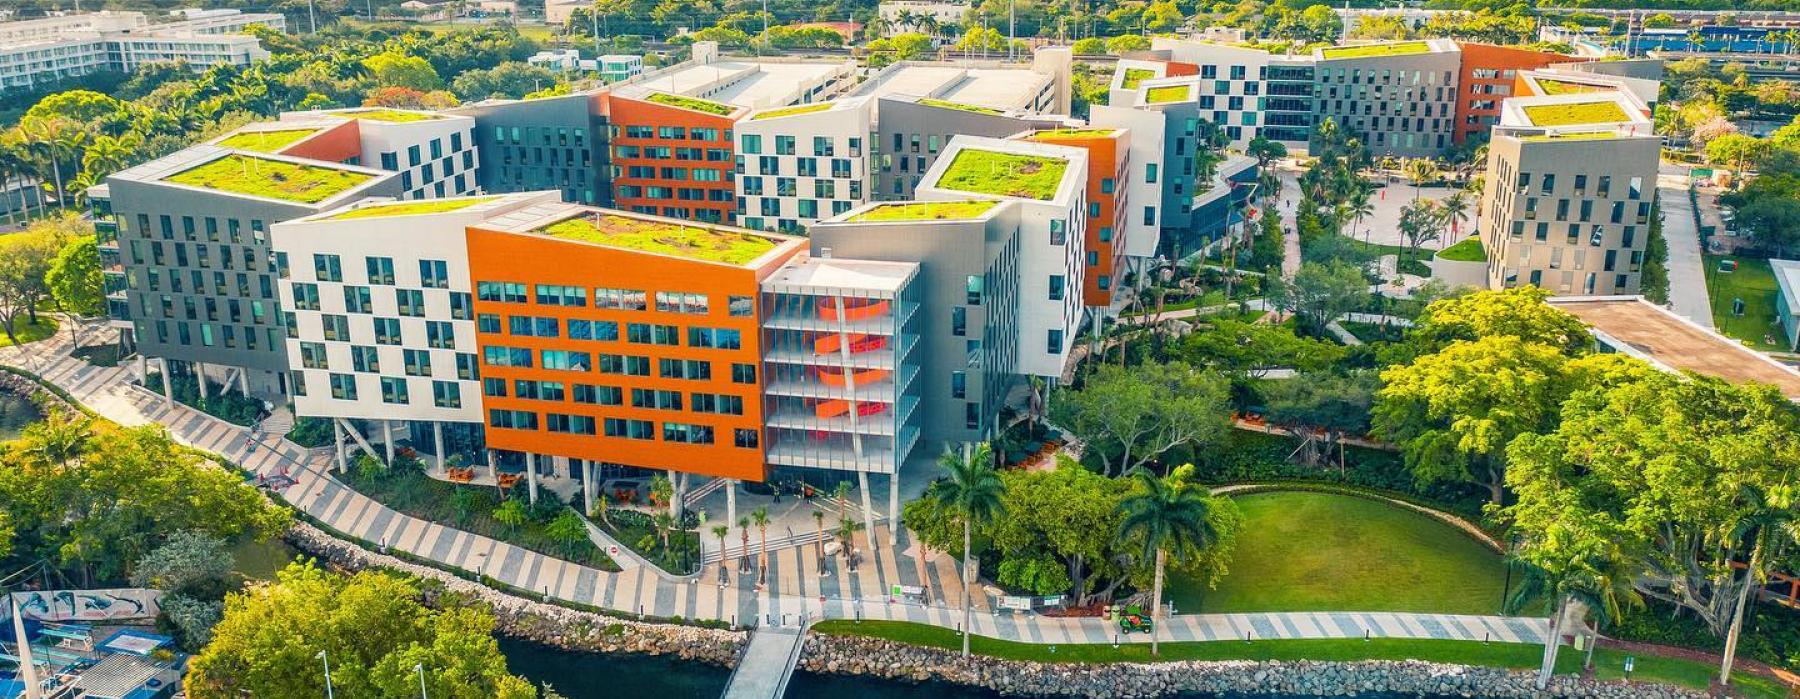 University_of_Miami